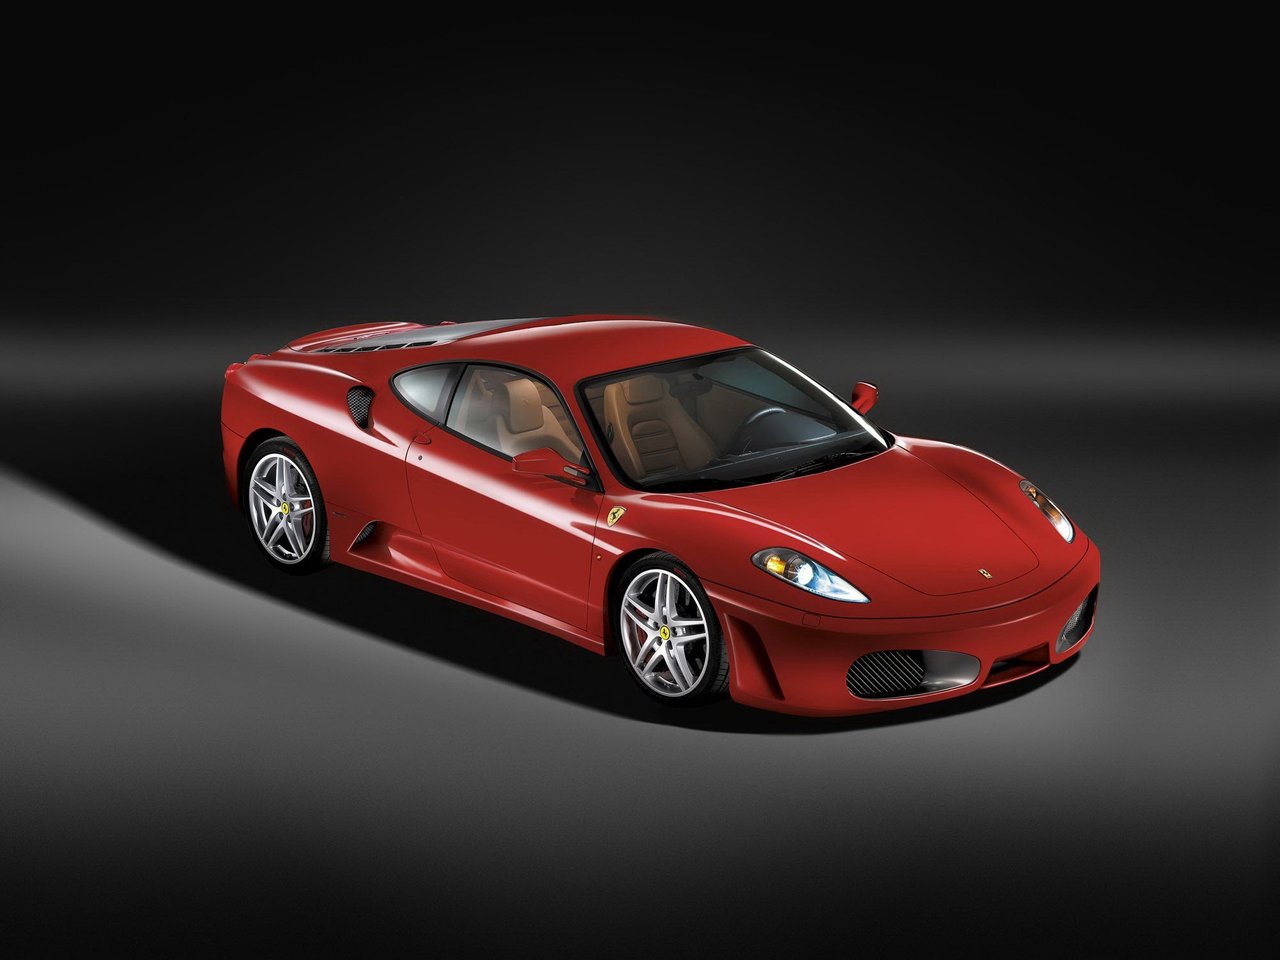 Расход газа одной комплектации купе Ferrari F430. Разница стоимости заправки газом и бензином. Автономный пробег до и после установки ГБО.